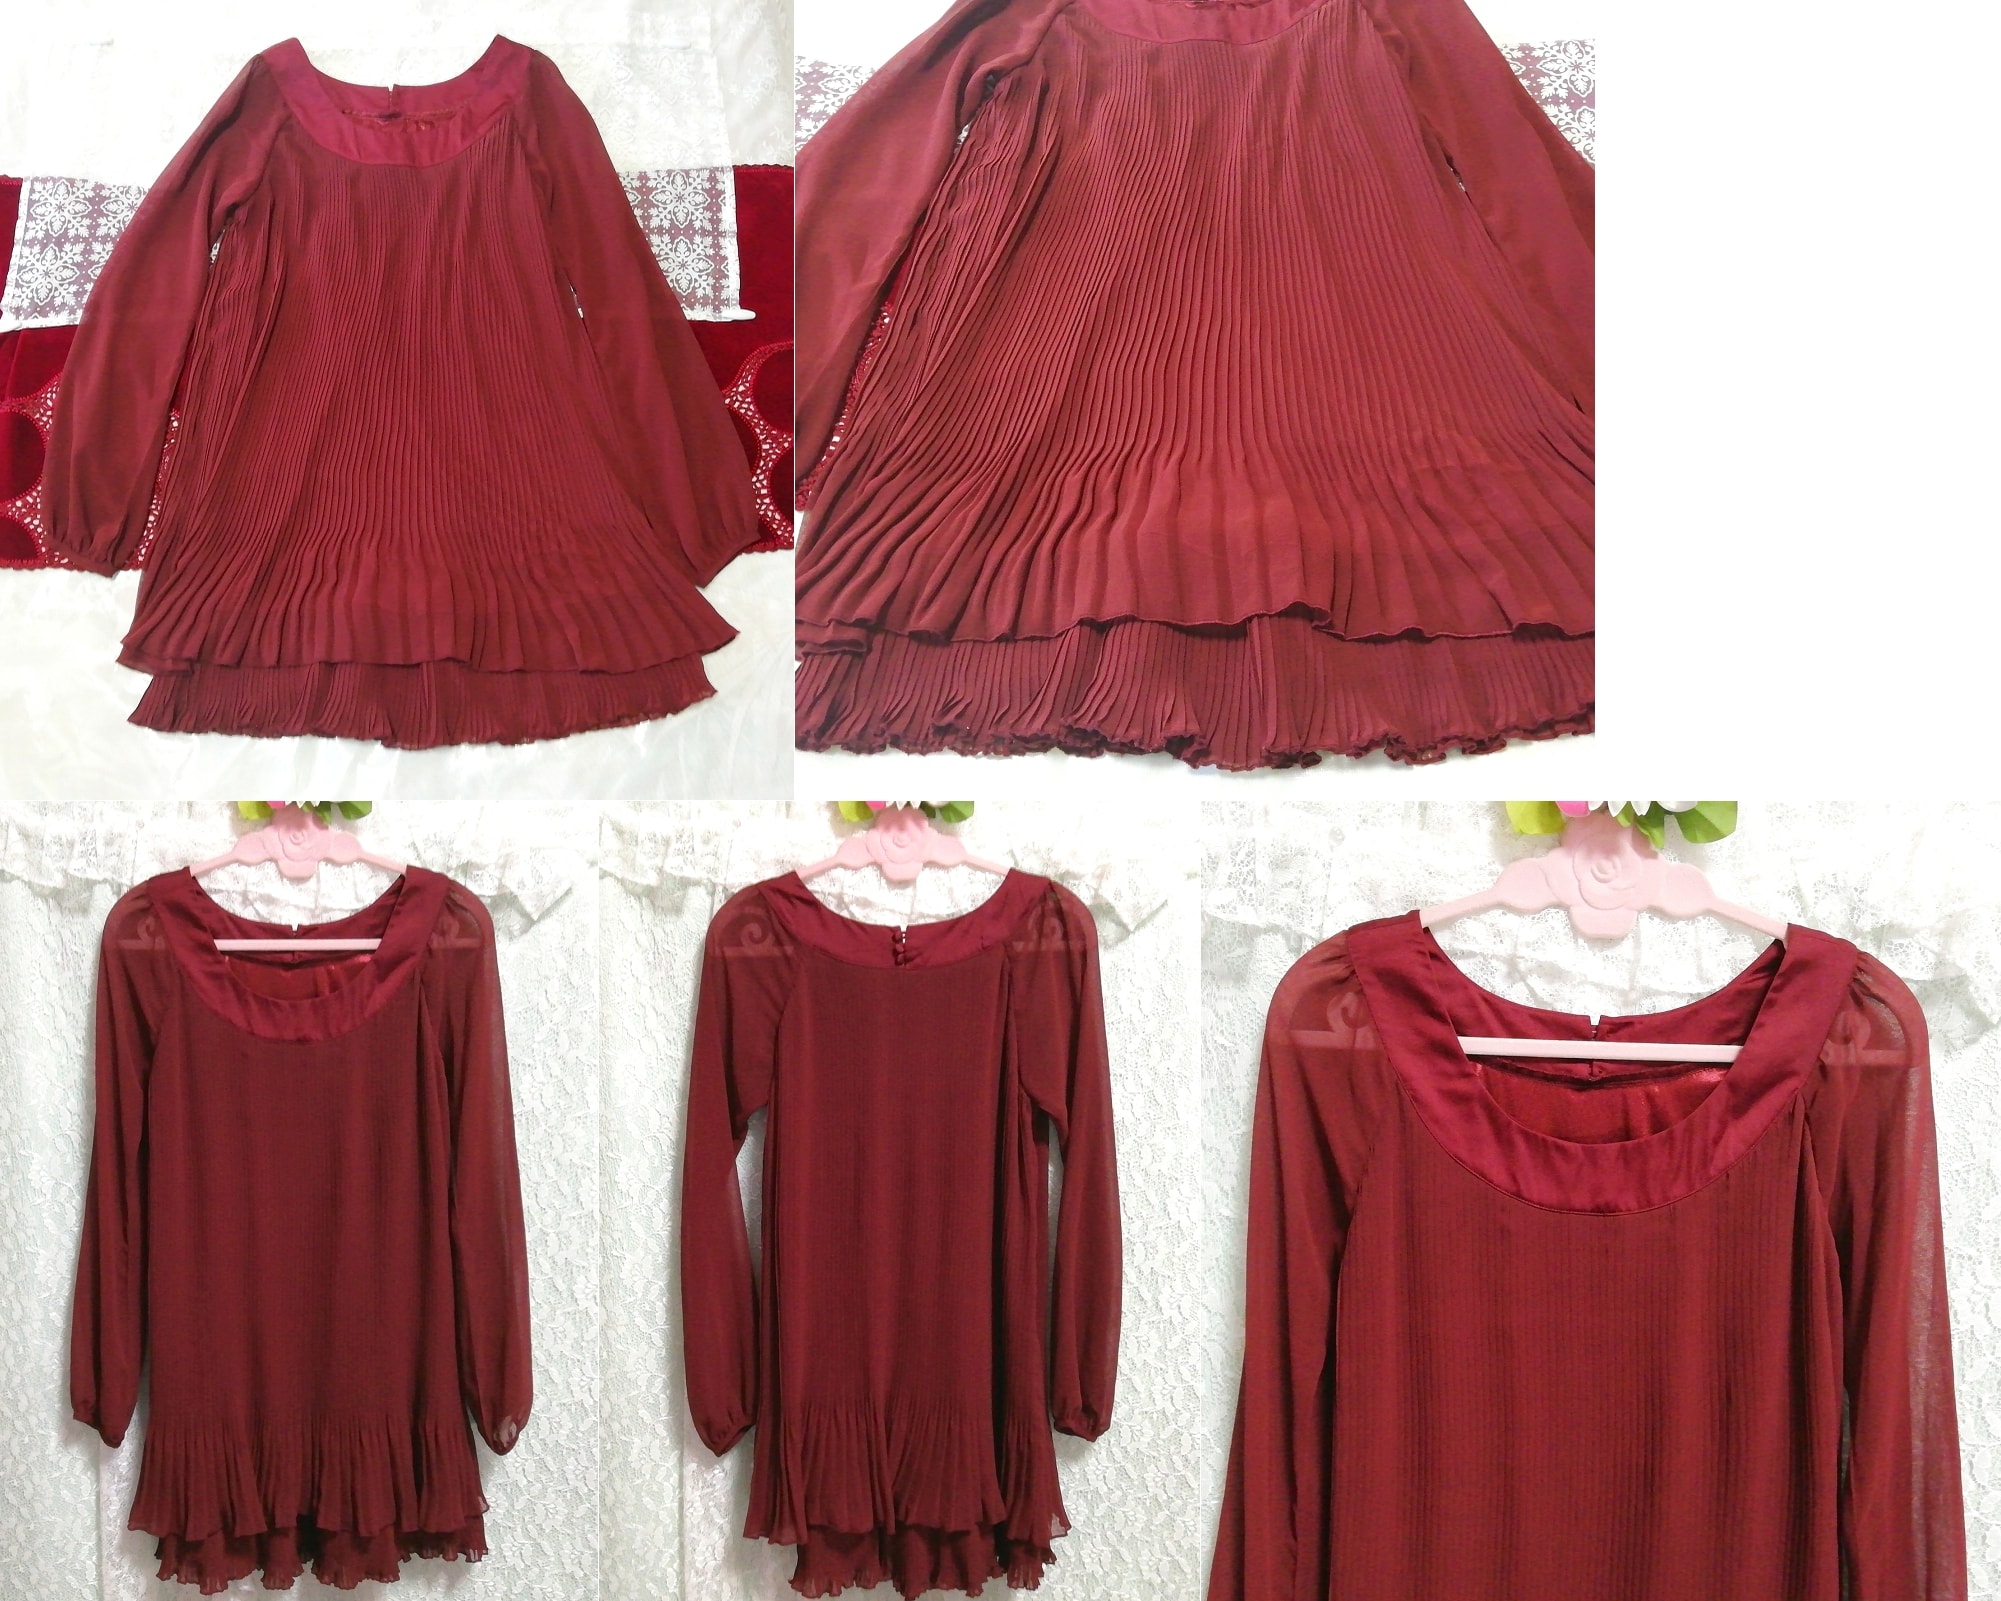 فستان نوم طويل الأكمام من الشيفون باللون الأحمر النبيذي الأحمر, سترة, كم طويل, حجم م